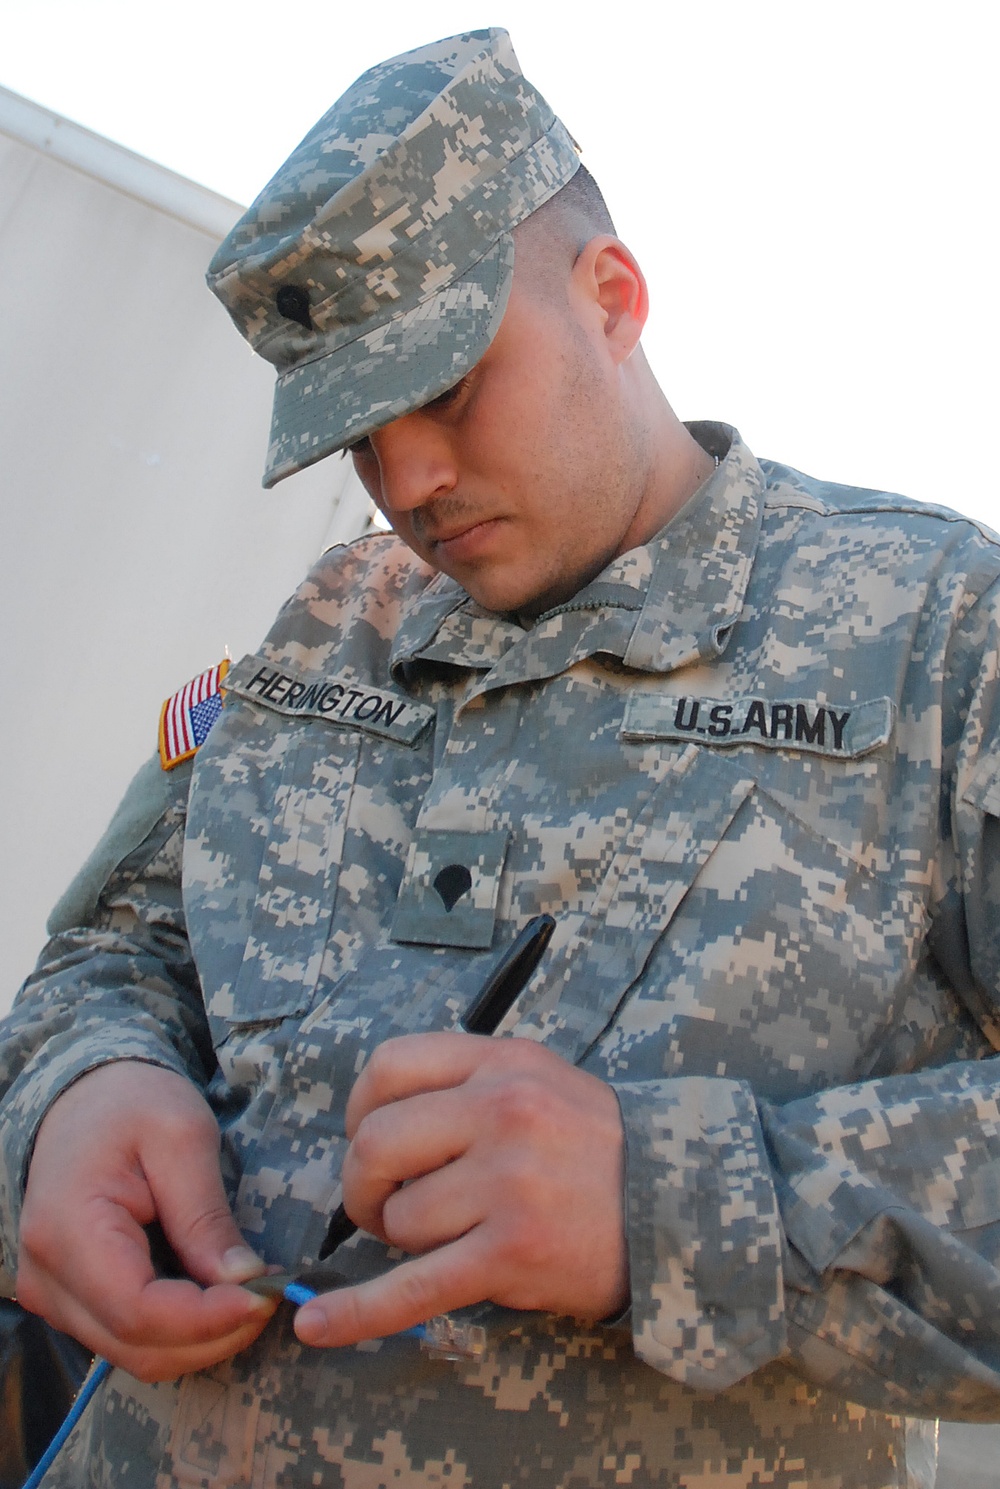 SC, Va. National Guard troops provide communications support for Vigilant Guard